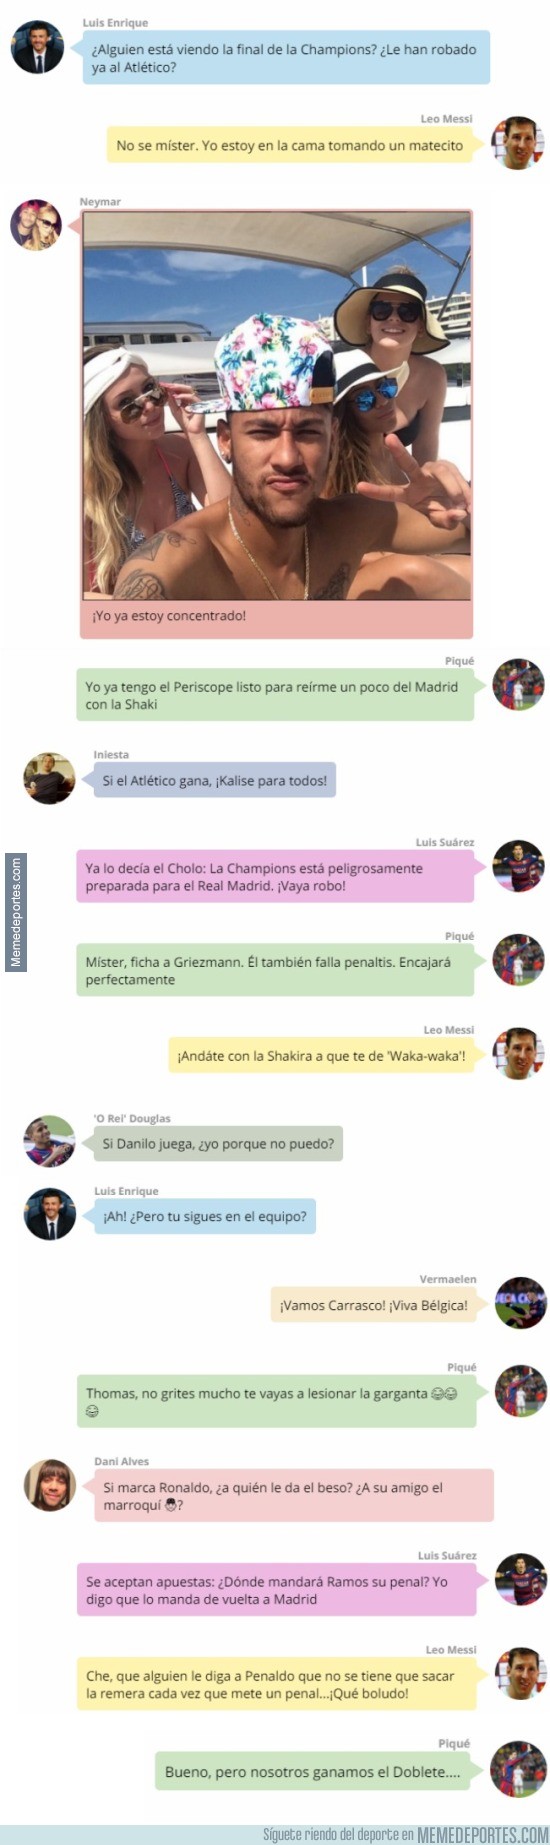 864919 - Así fue la conversación en Whatsapp de los jugadores del Barça durante la final de la Champions